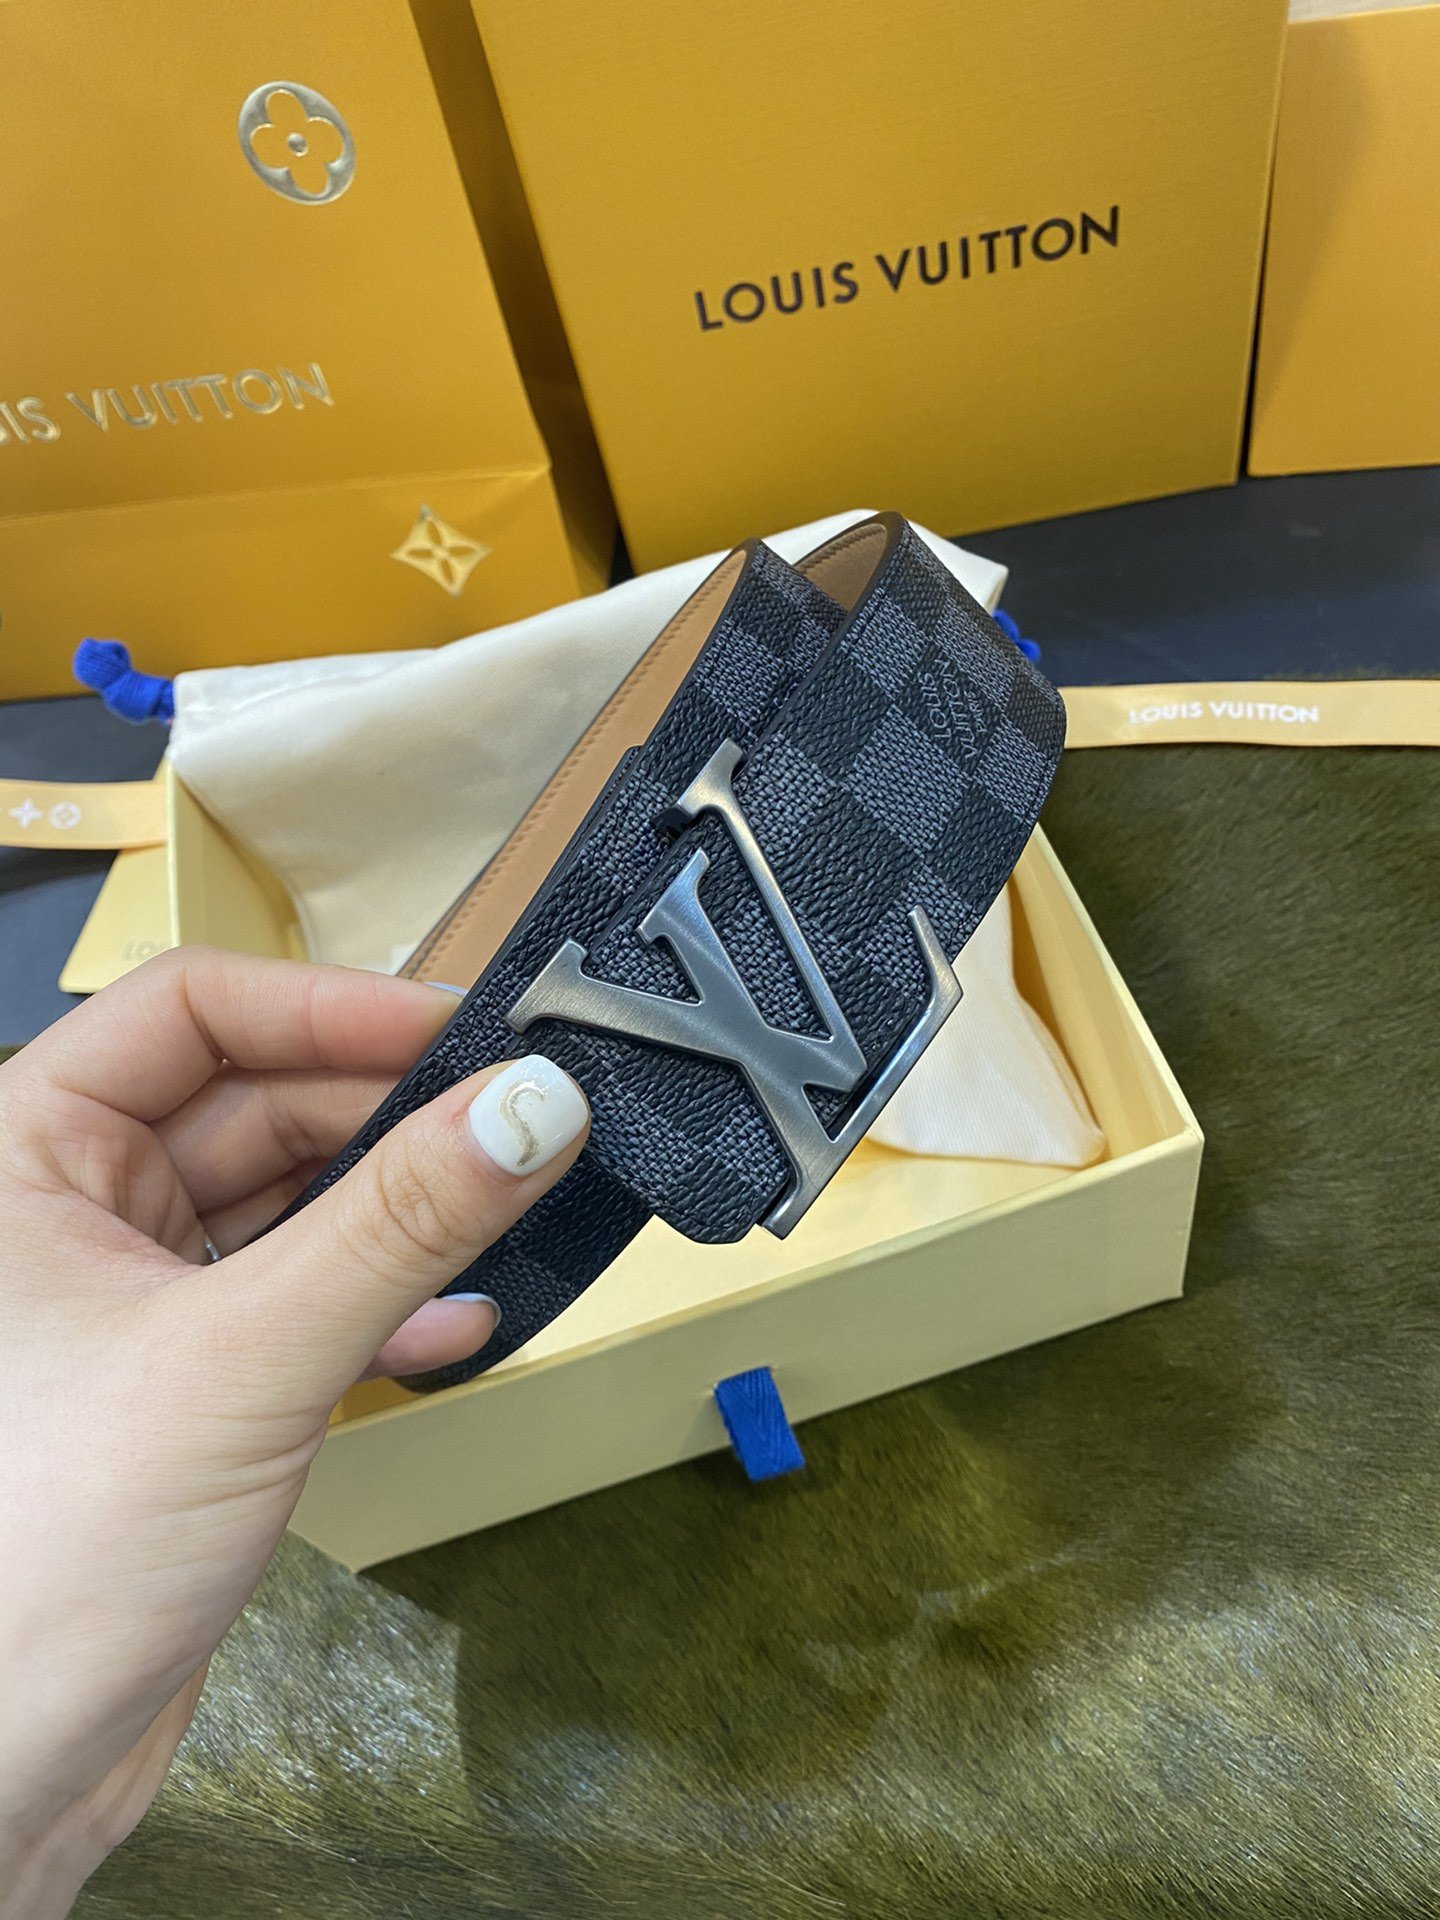 腰带皮带LV经典款沙底路易4.0CM特别设计风格简单大方品质无须置疑懂貨入配全套包装礼盒